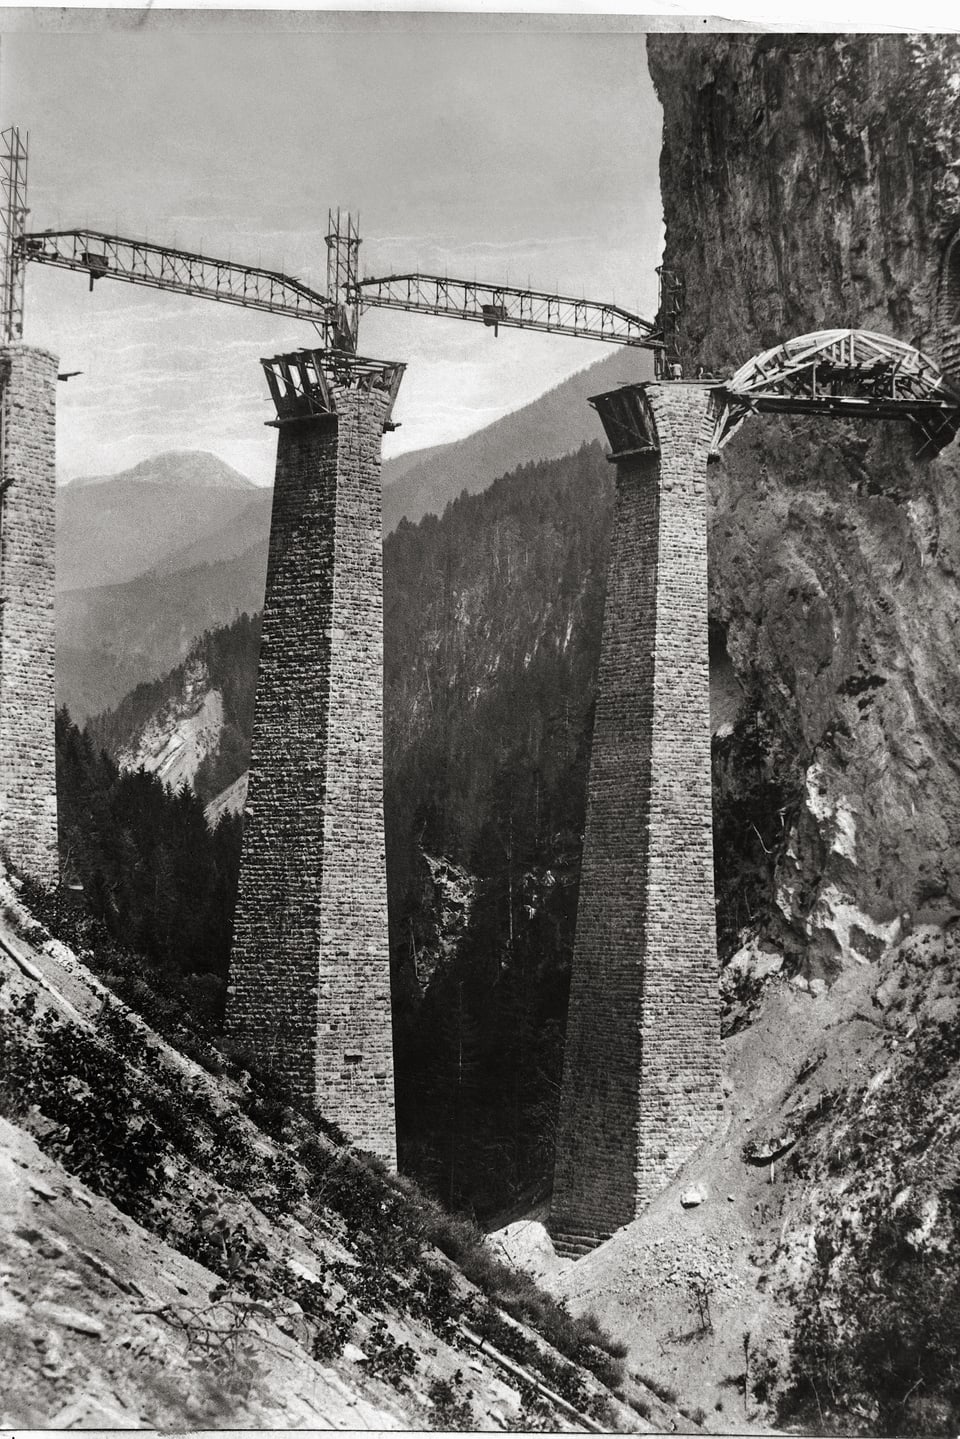 Eine Aufnahme aus der Bauphase des weltbekannten Landwasserviaduktes aus dem Jahr 1901 zeigt die gemauerten Pfeiler und Gerüste in der Höhe während der Bauphase.